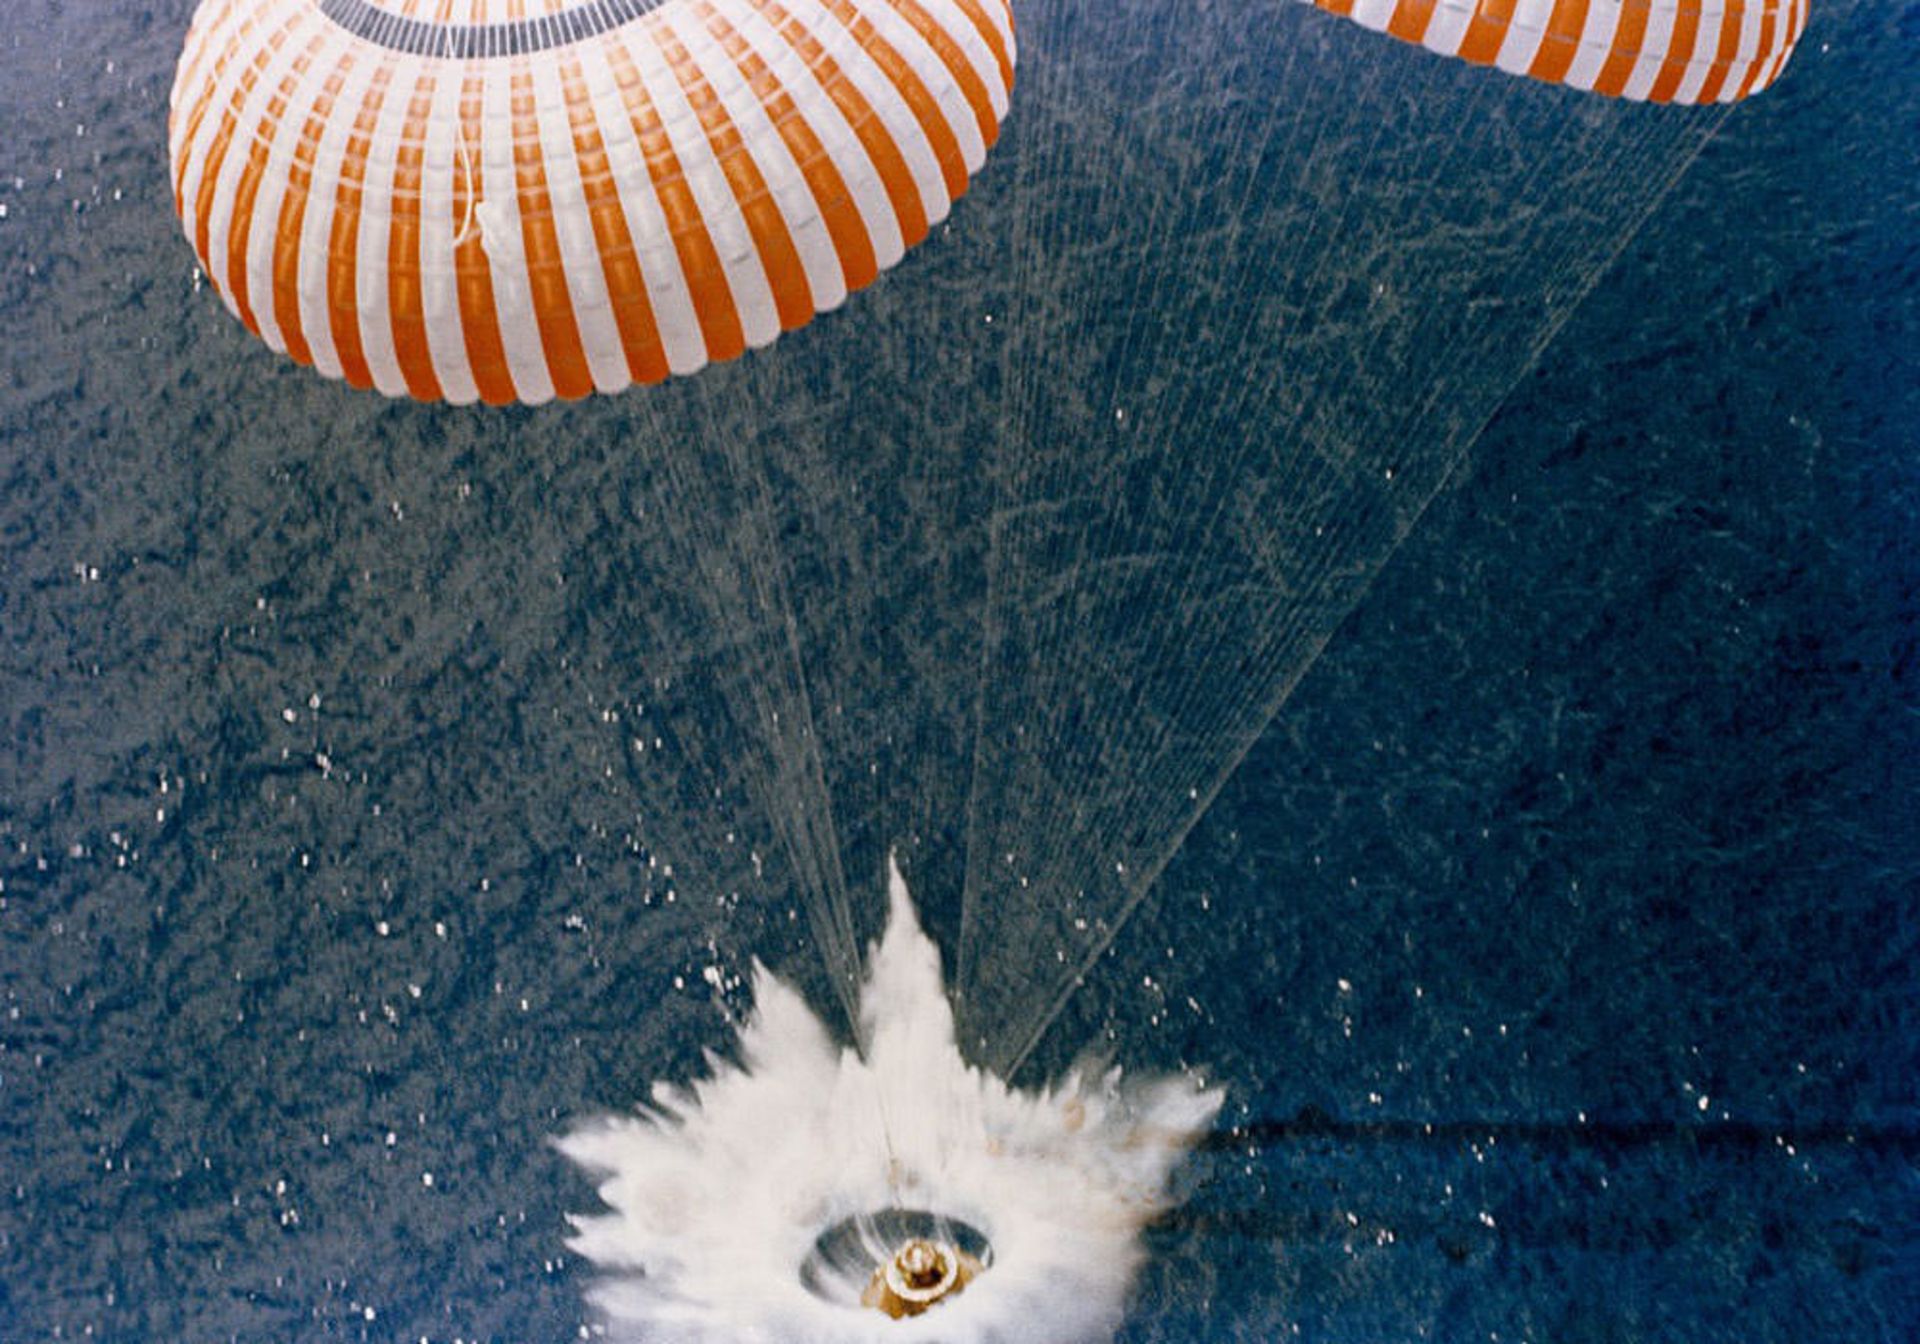 ژول ورن حتی به توصیف بالون فضاپیما هم در آثار خود پرداخته است